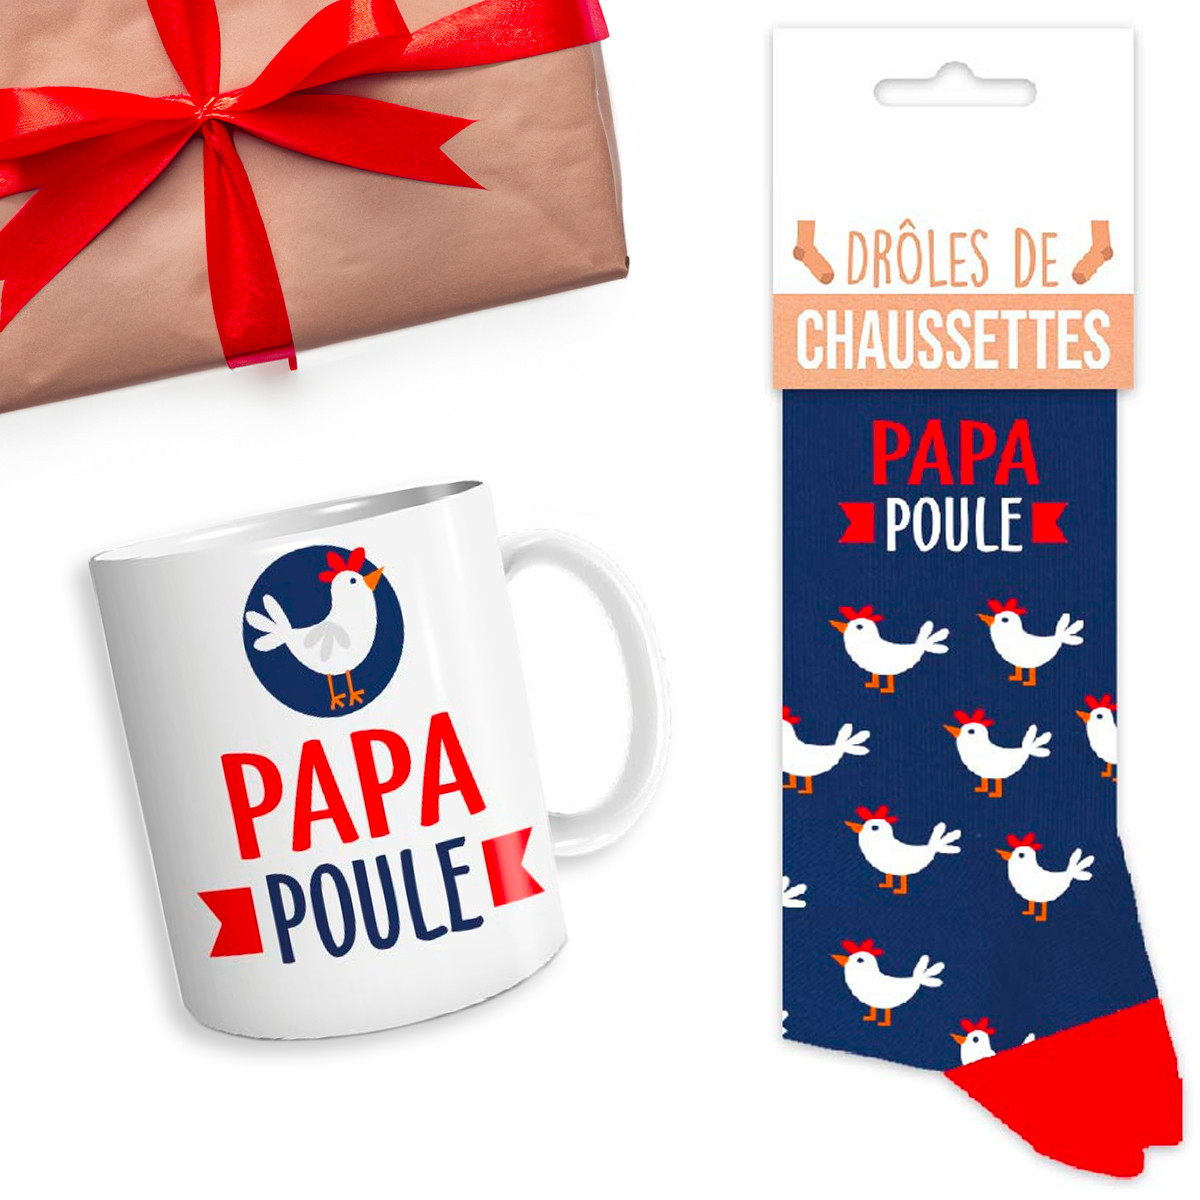 Chaussettes Papa adorable - 9 couleurs